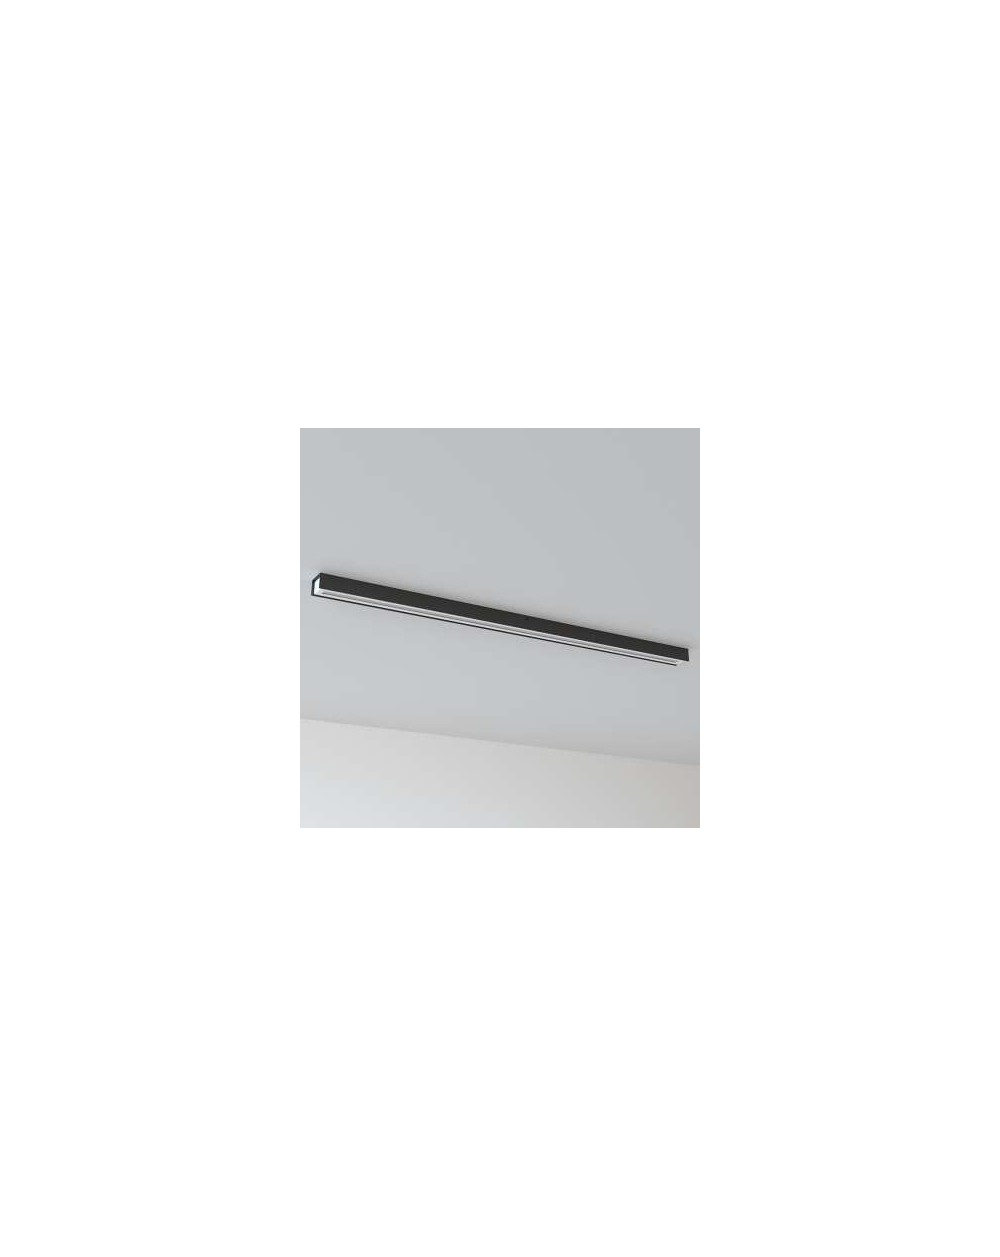 Lampa sufitowa IMA plafon - Cleoni nowoczesna oprawa ledowa 900 mm